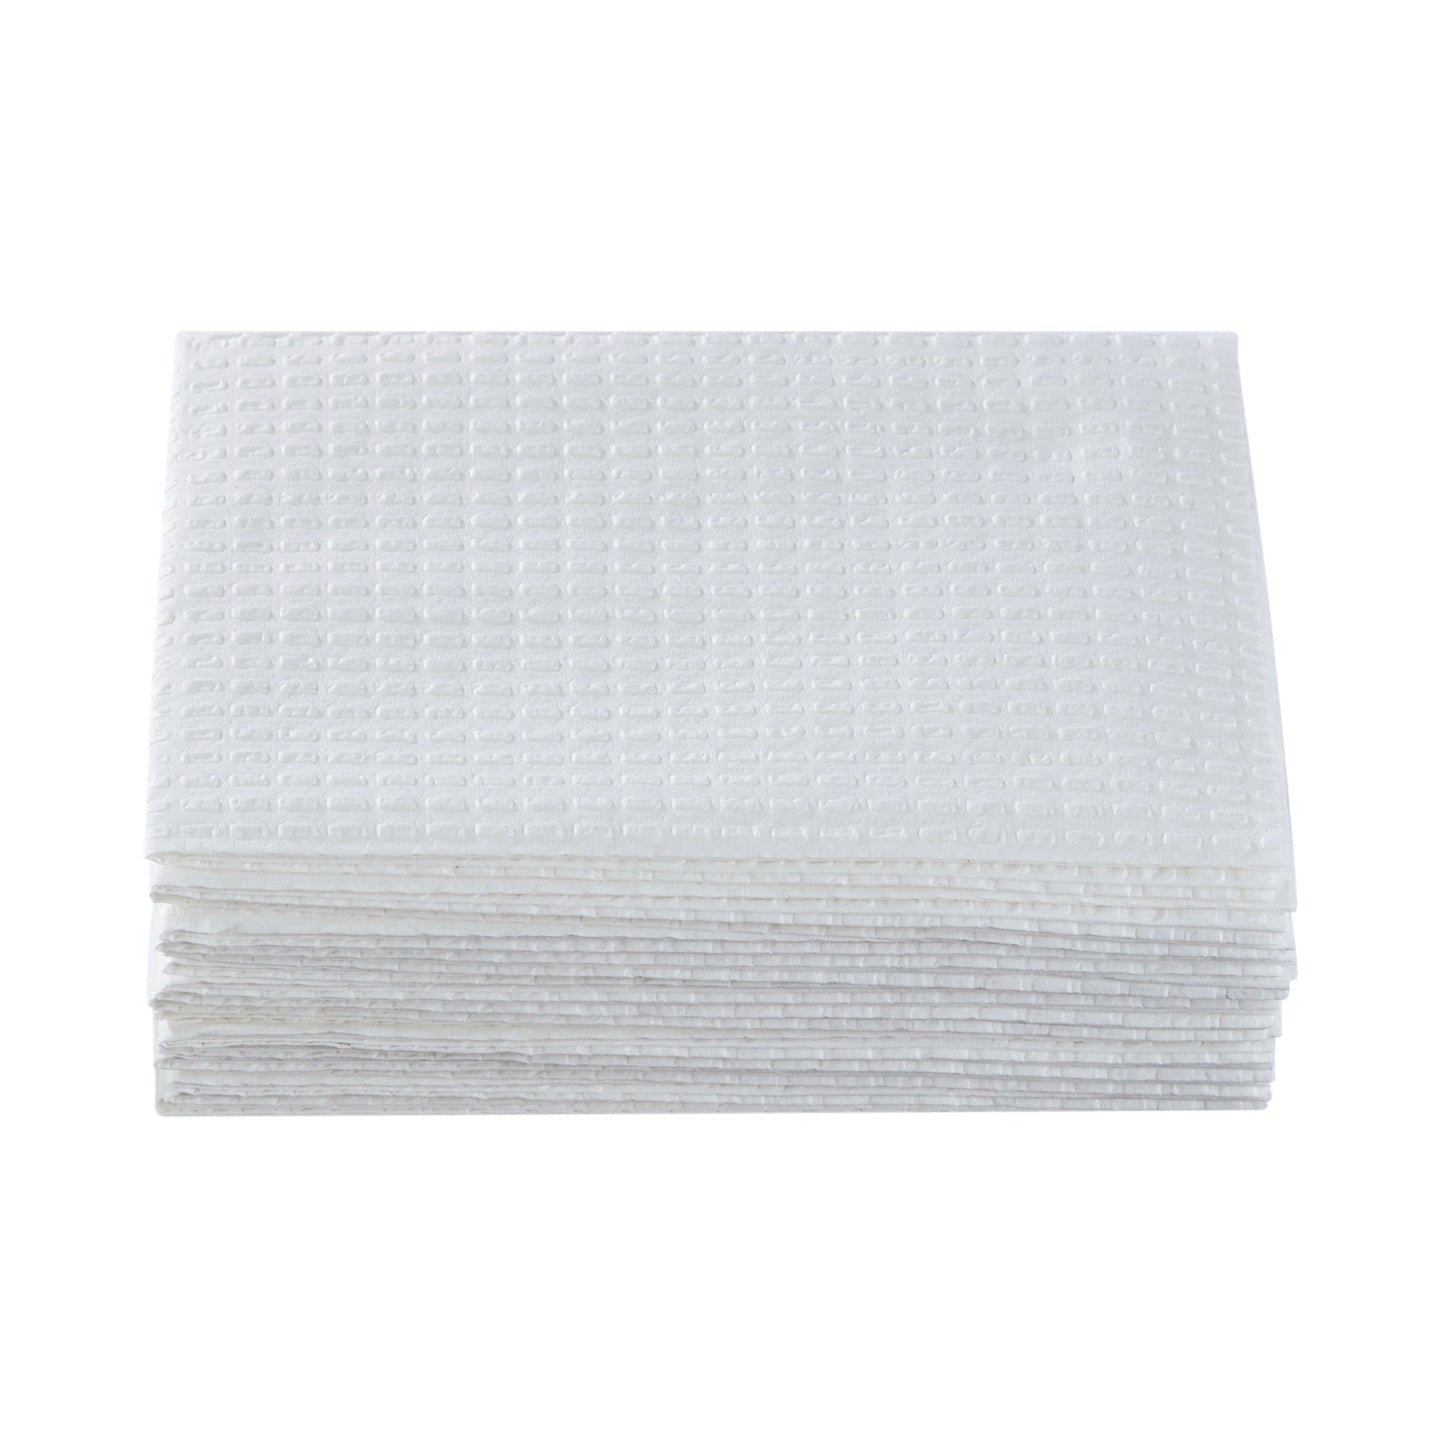 Mckesson Nonsterile White Procedure Towels, 13 X 18 Inch, Sold As 500/Case Mckesson 18-860